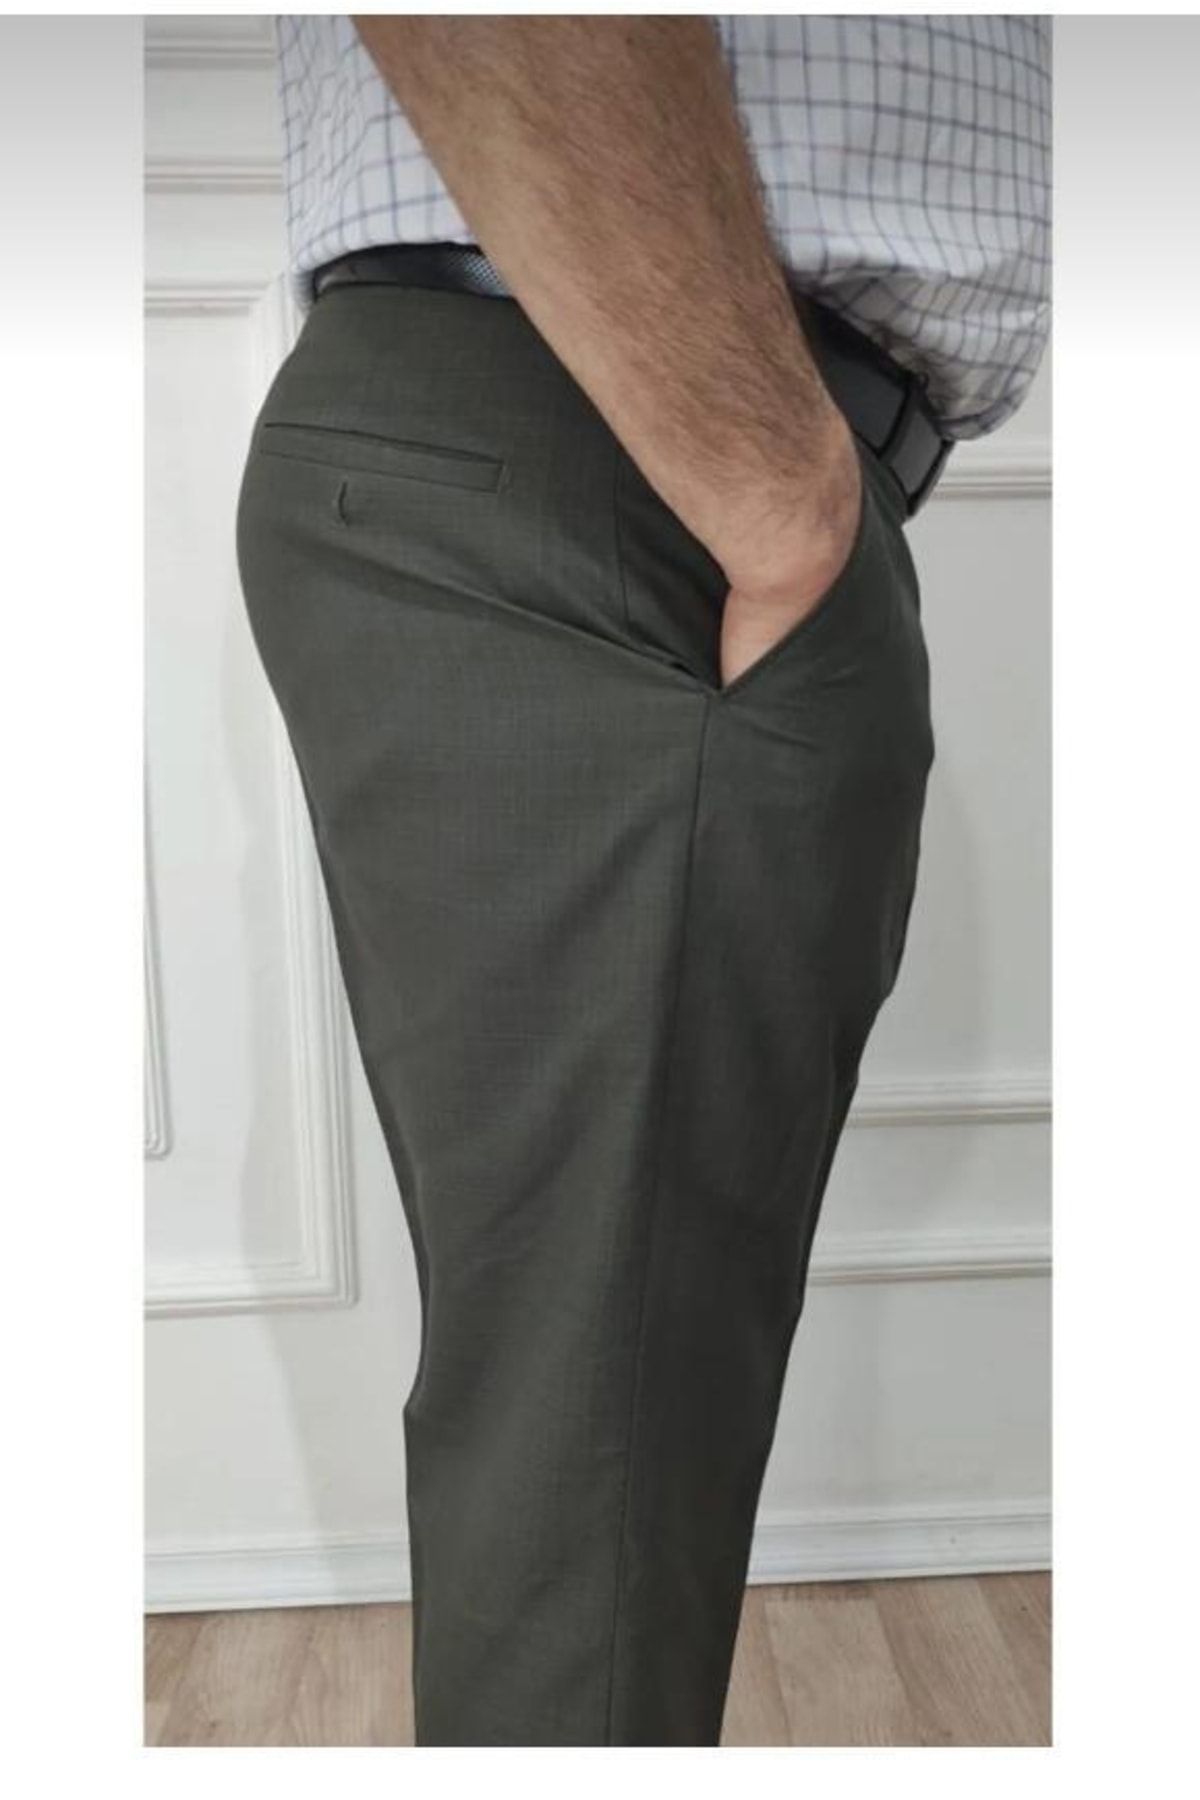 FATELLA Erkek Baba Düz Renk Rahat Kalıp Yüksek Bel Klasik Kumaş Pantolon